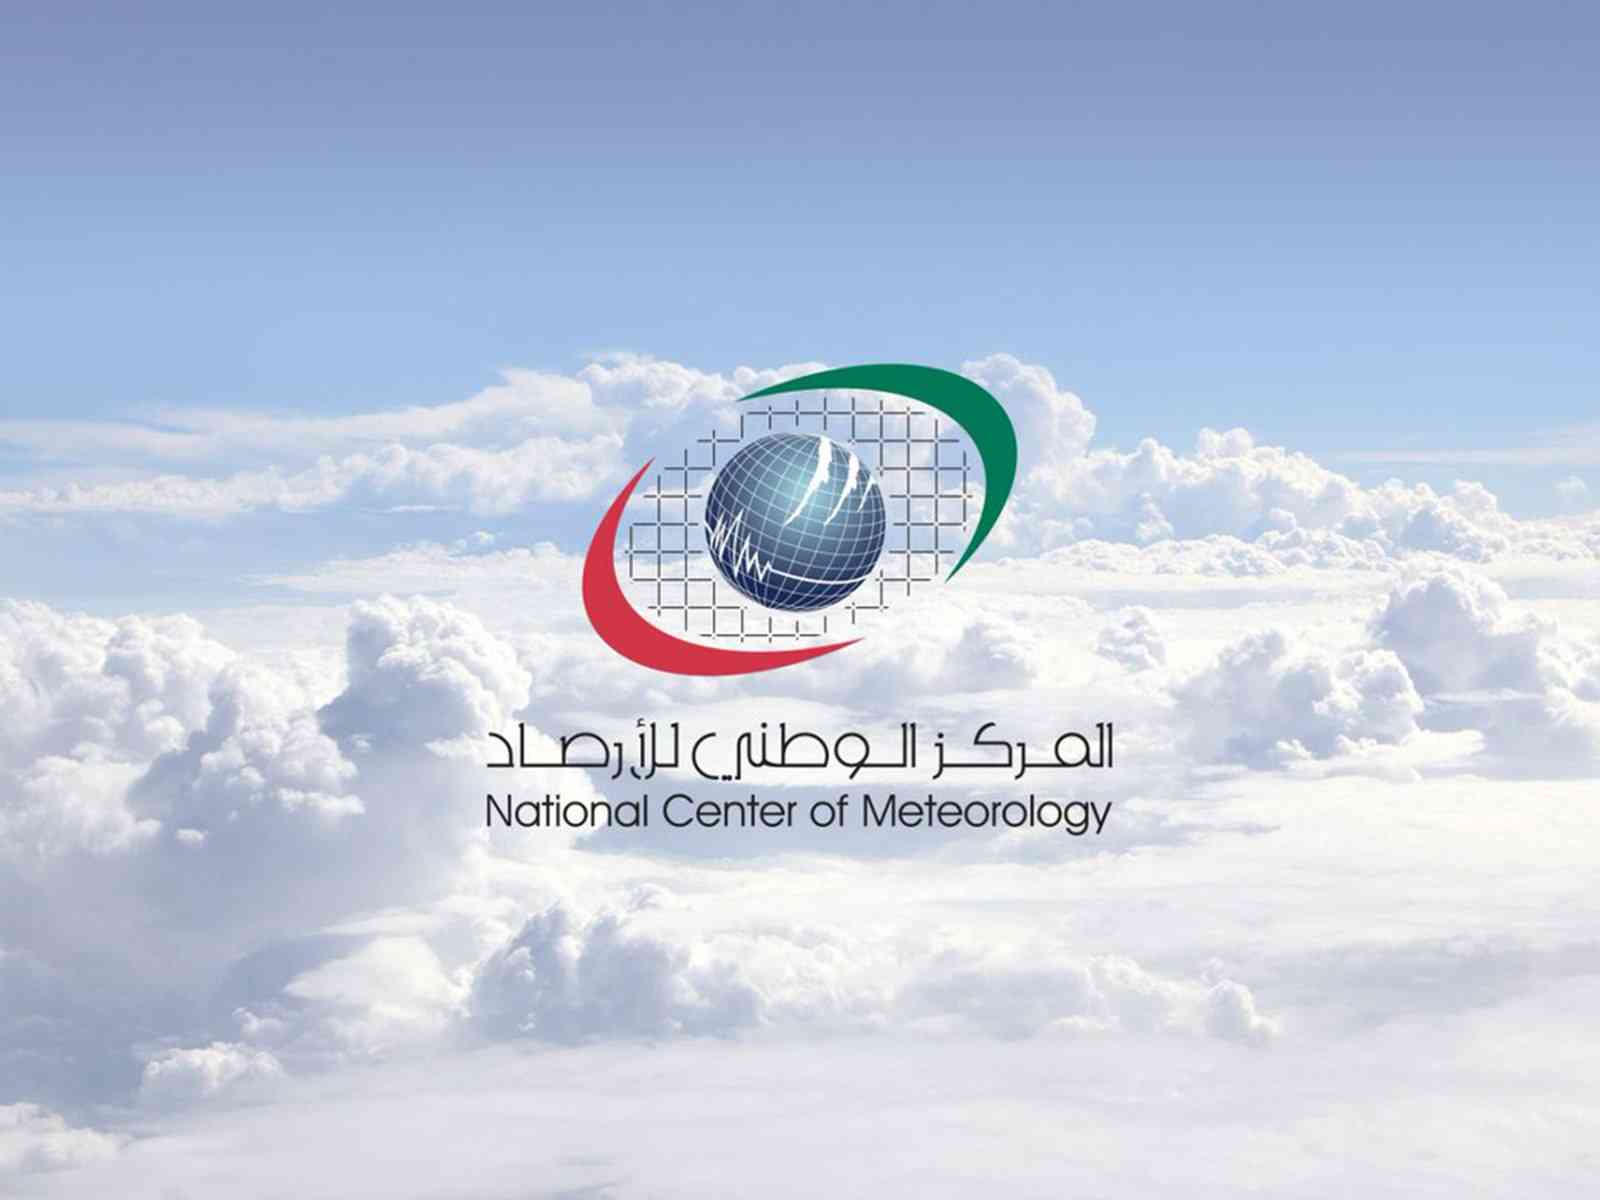  جامعة الشارقة تختتم سلسلة احتفالات اليوم الوطني الـ 48 بالــريـوق الإماراتي